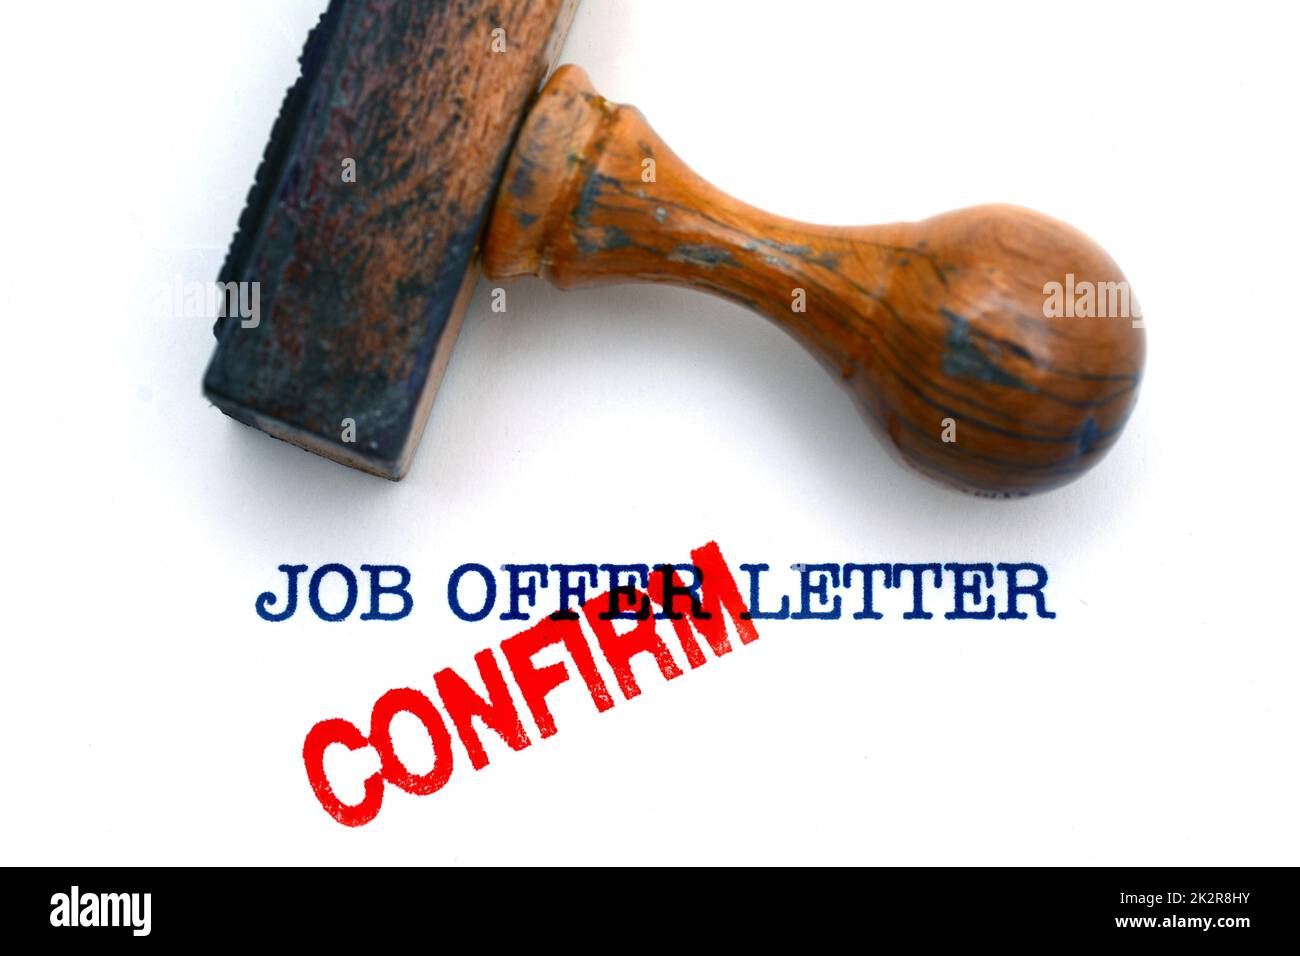 Job offer letter Stock Photo